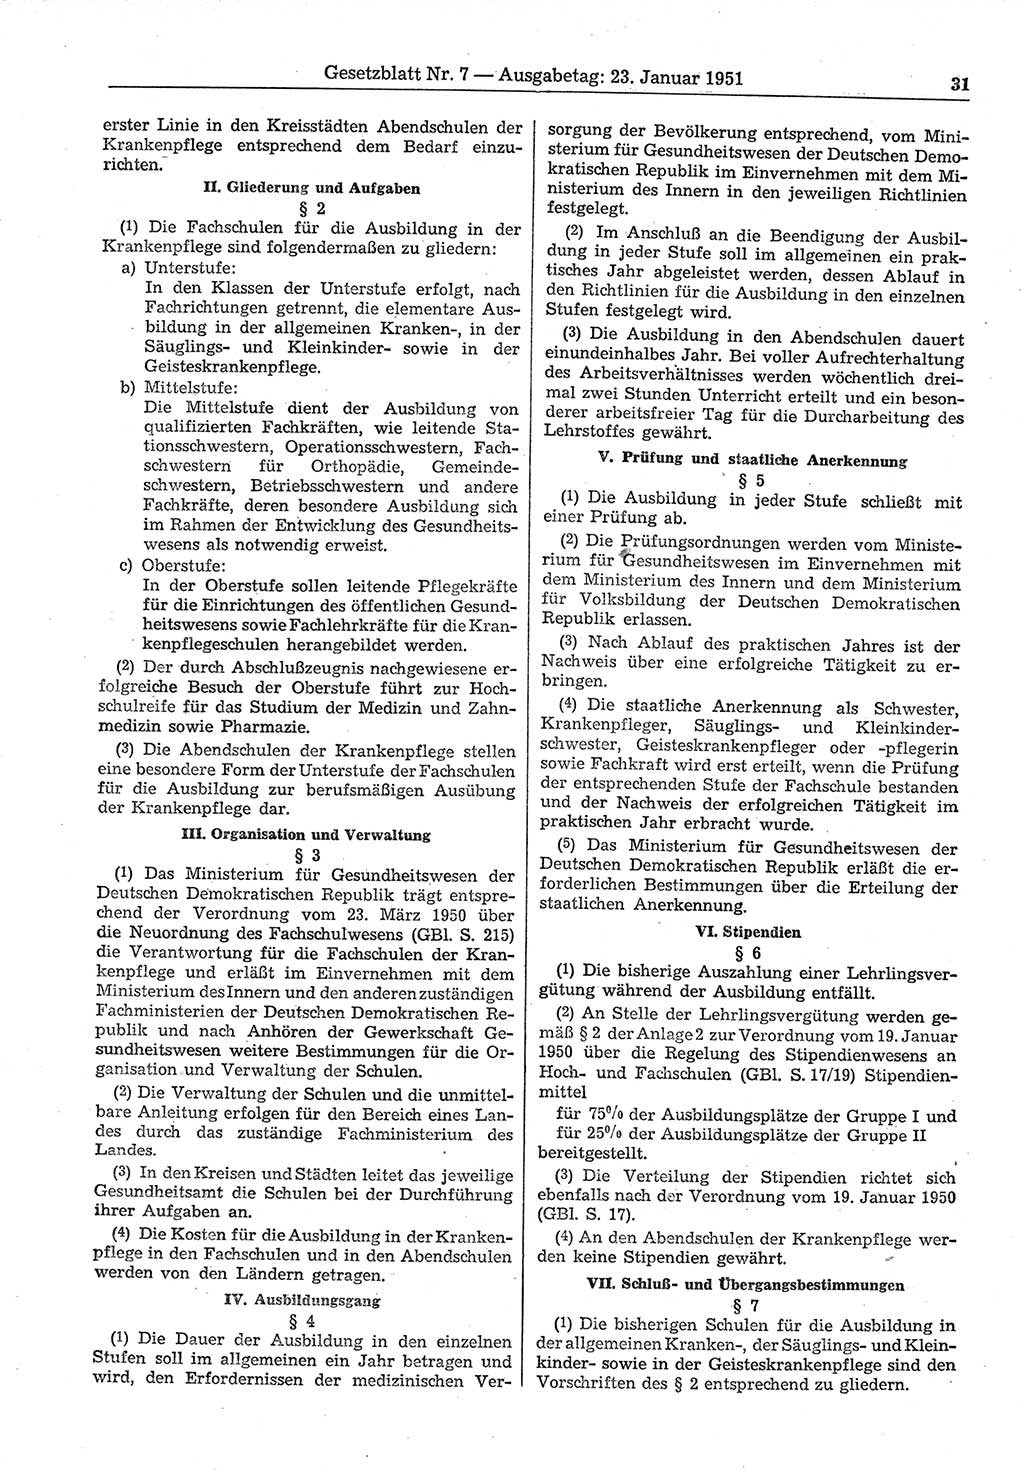 Gesetzblatt (GBl.) der Deutschen Demokratischen Republik (DDR) 1951, Seite 31 (GBl. DDR 1951, S. 31)